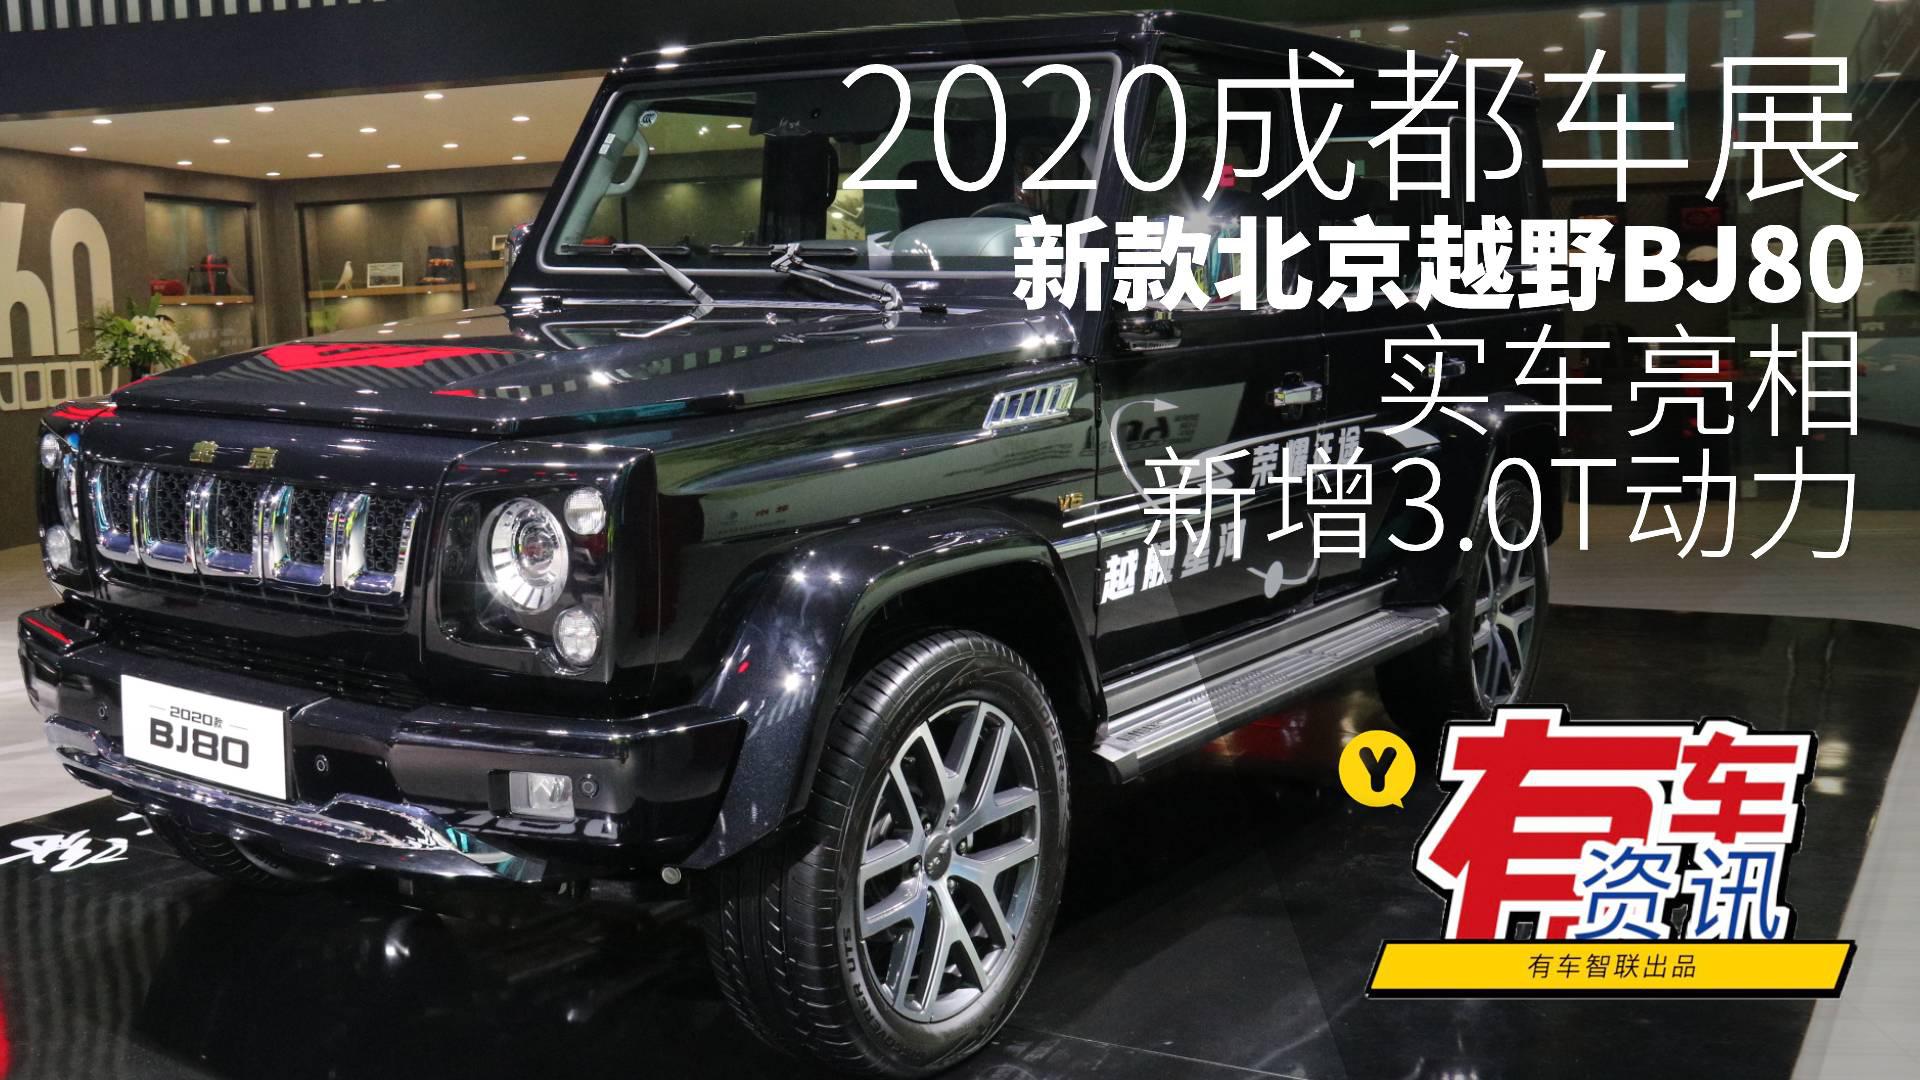 2020成都车展丨新增3.0T动力 新款北京越野BJ80实车亮相